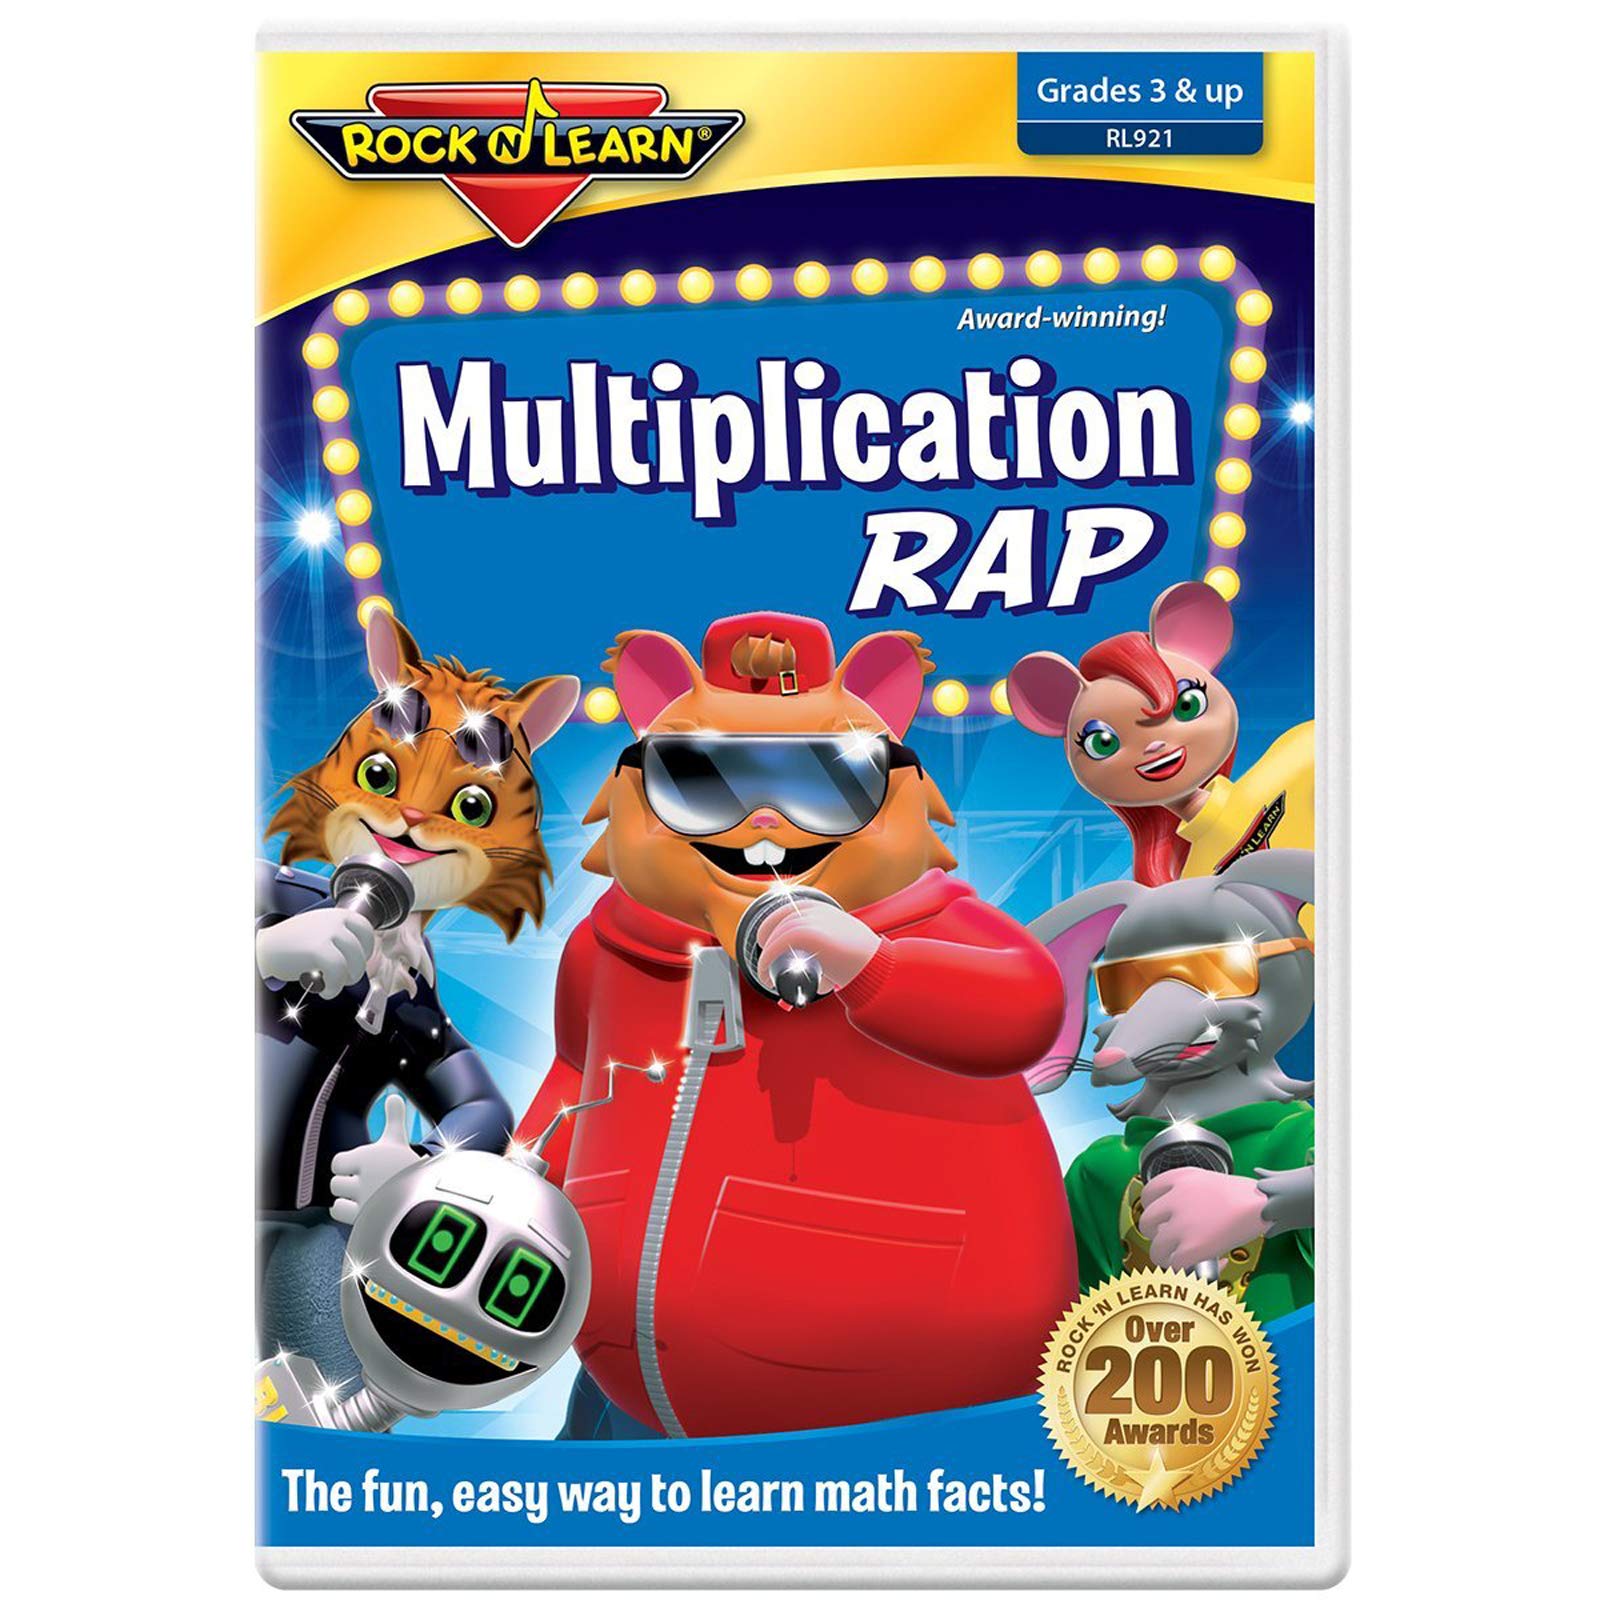 Multiplication Rap DVD by Rock 'N Learn